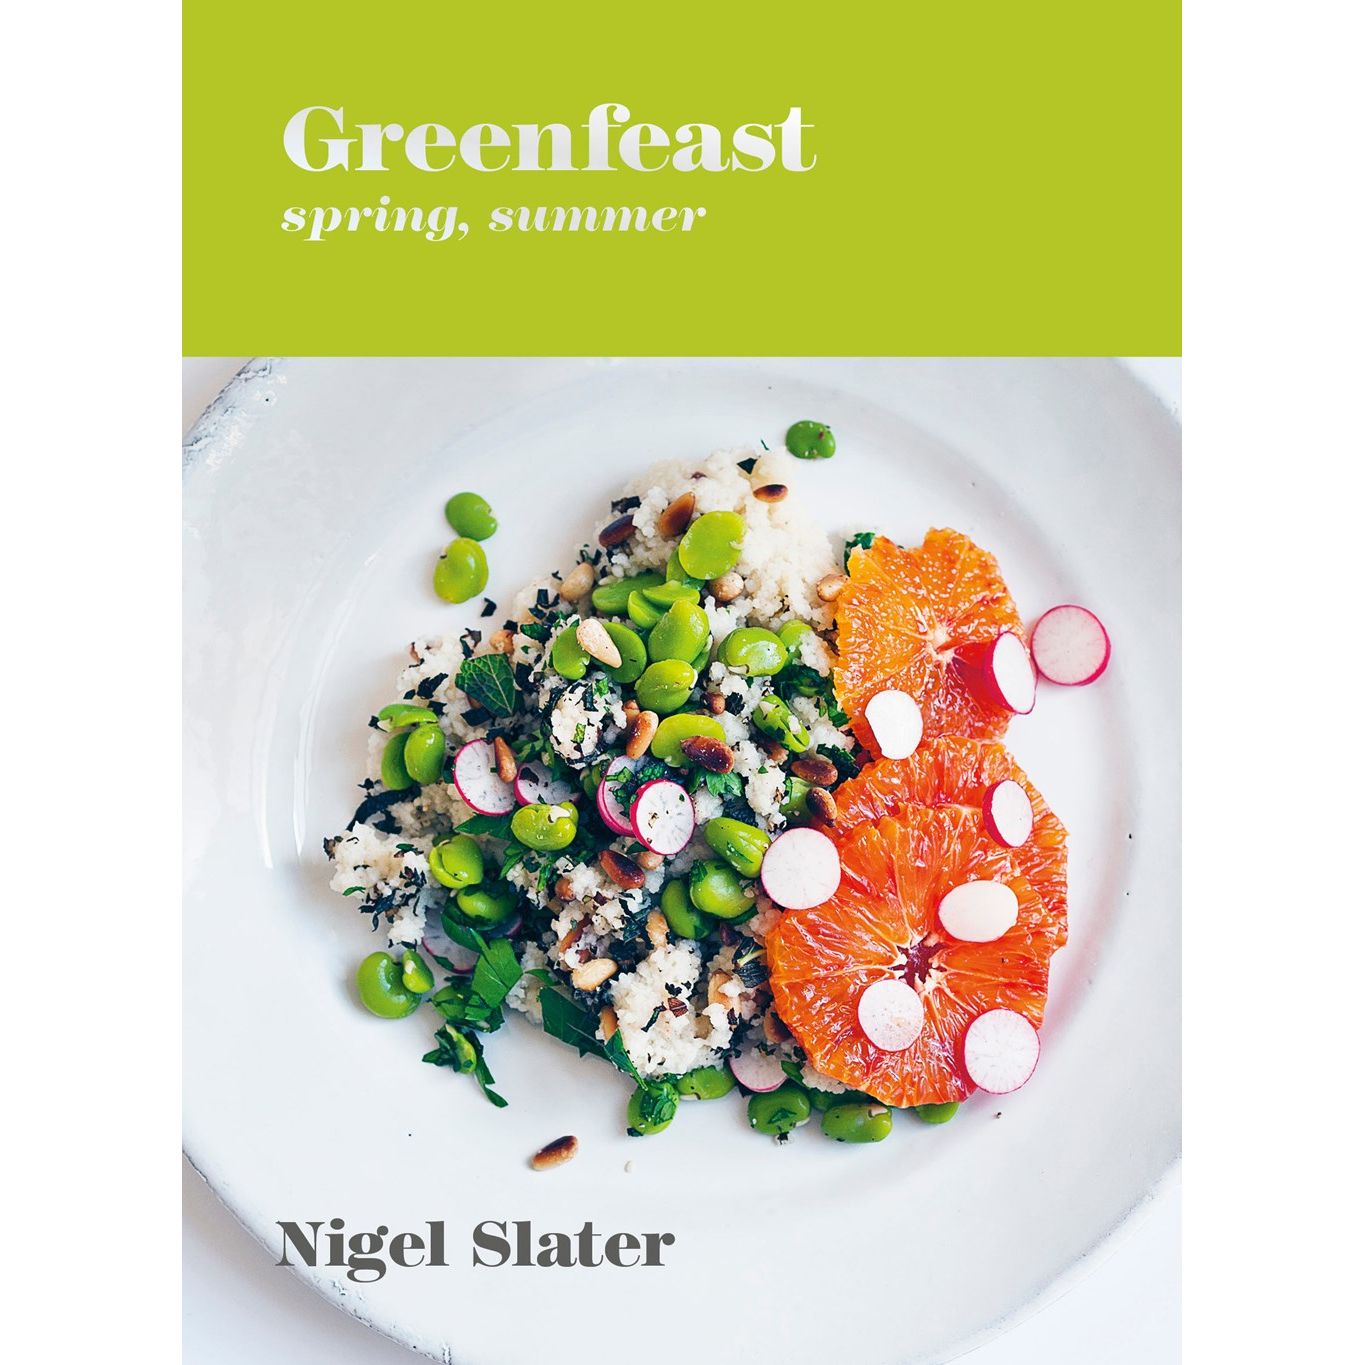 Greenfeast: Spring, Summer (Nigel Slater)